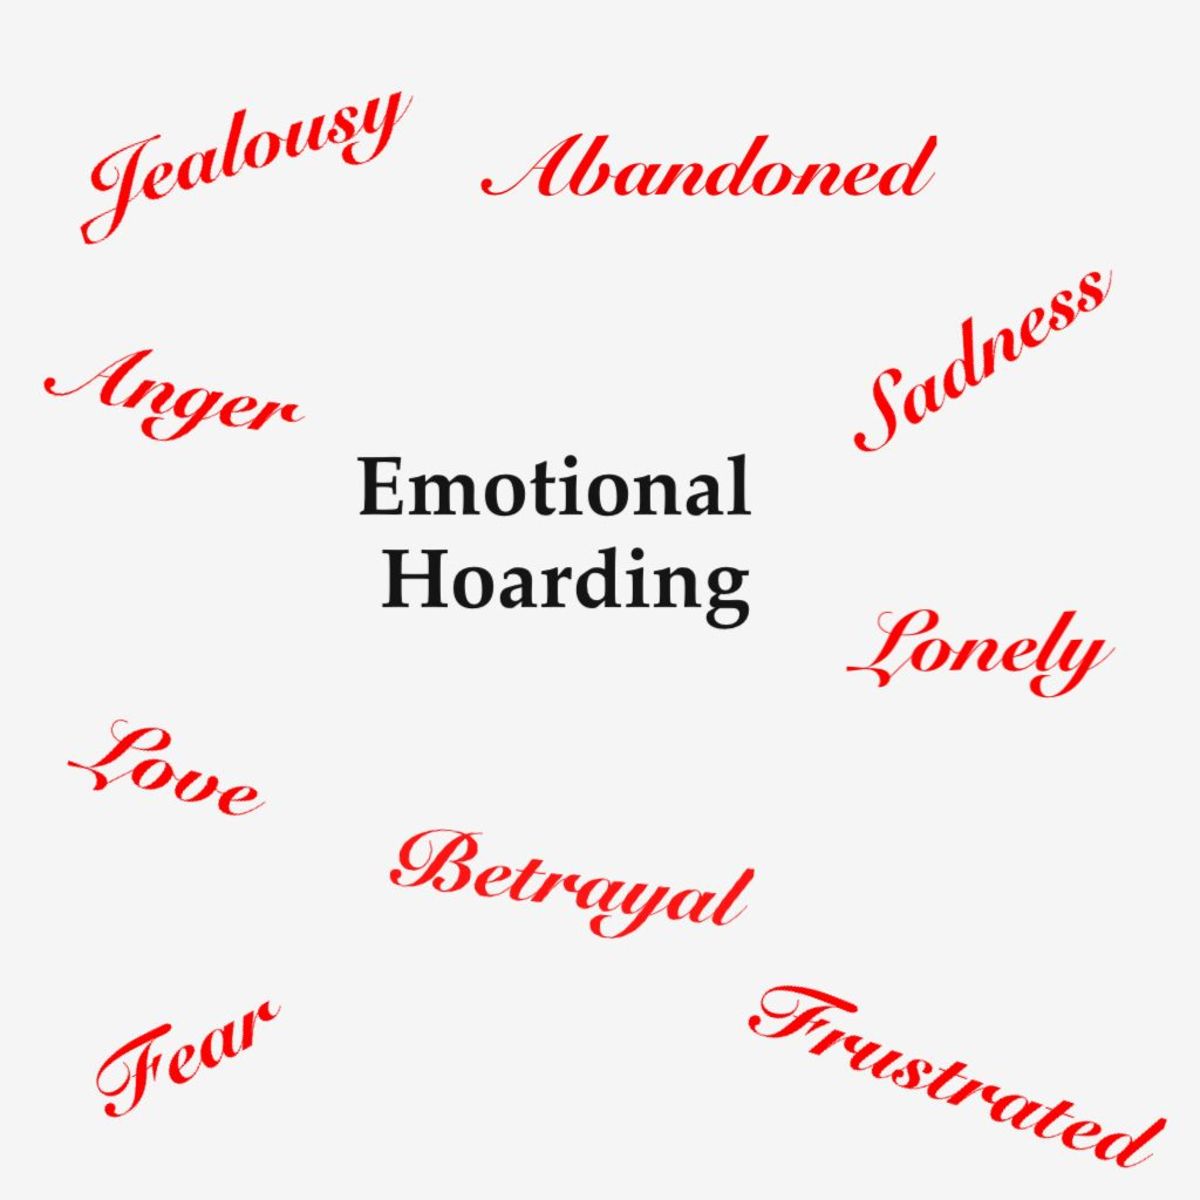 Emotional Hording